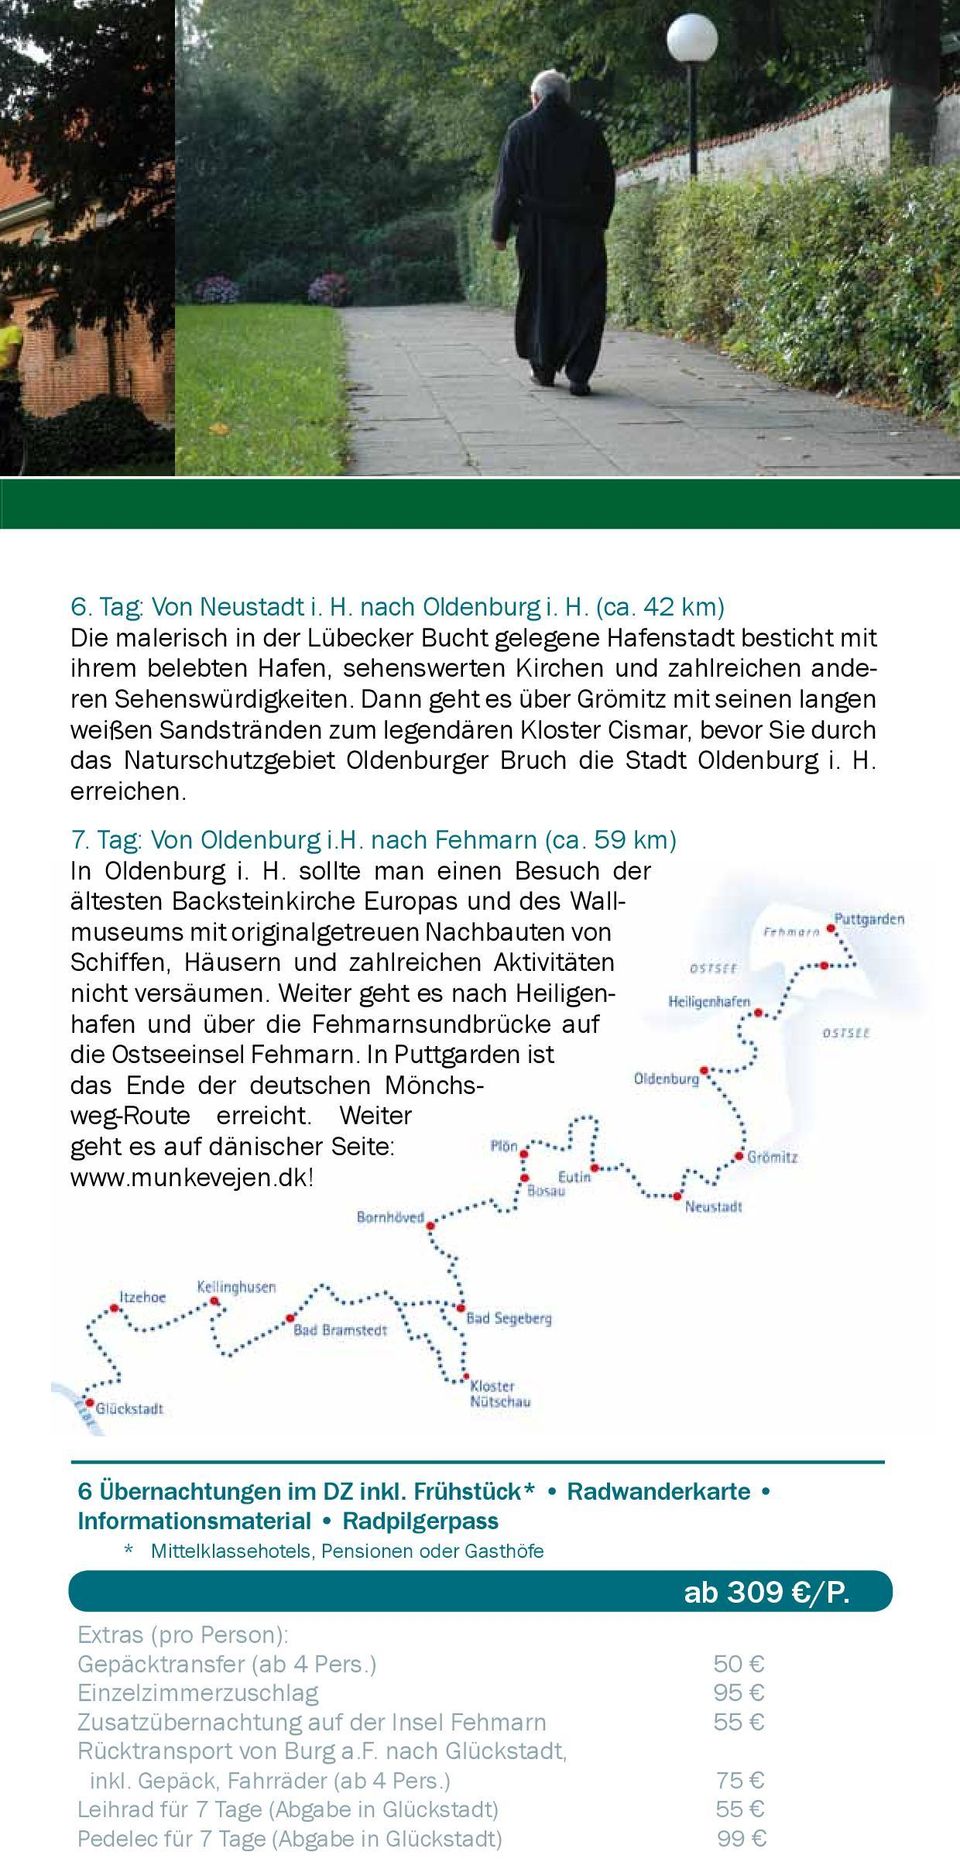 Dann geht es über Grömitz mit seinen langen weißen Sandstränden zum legendären Kloster Cismar, bevor Sie durch das Naturschutzgebiet Oldenburger Bruch die Stadt Oldenburg i. H. erreichen. 7.